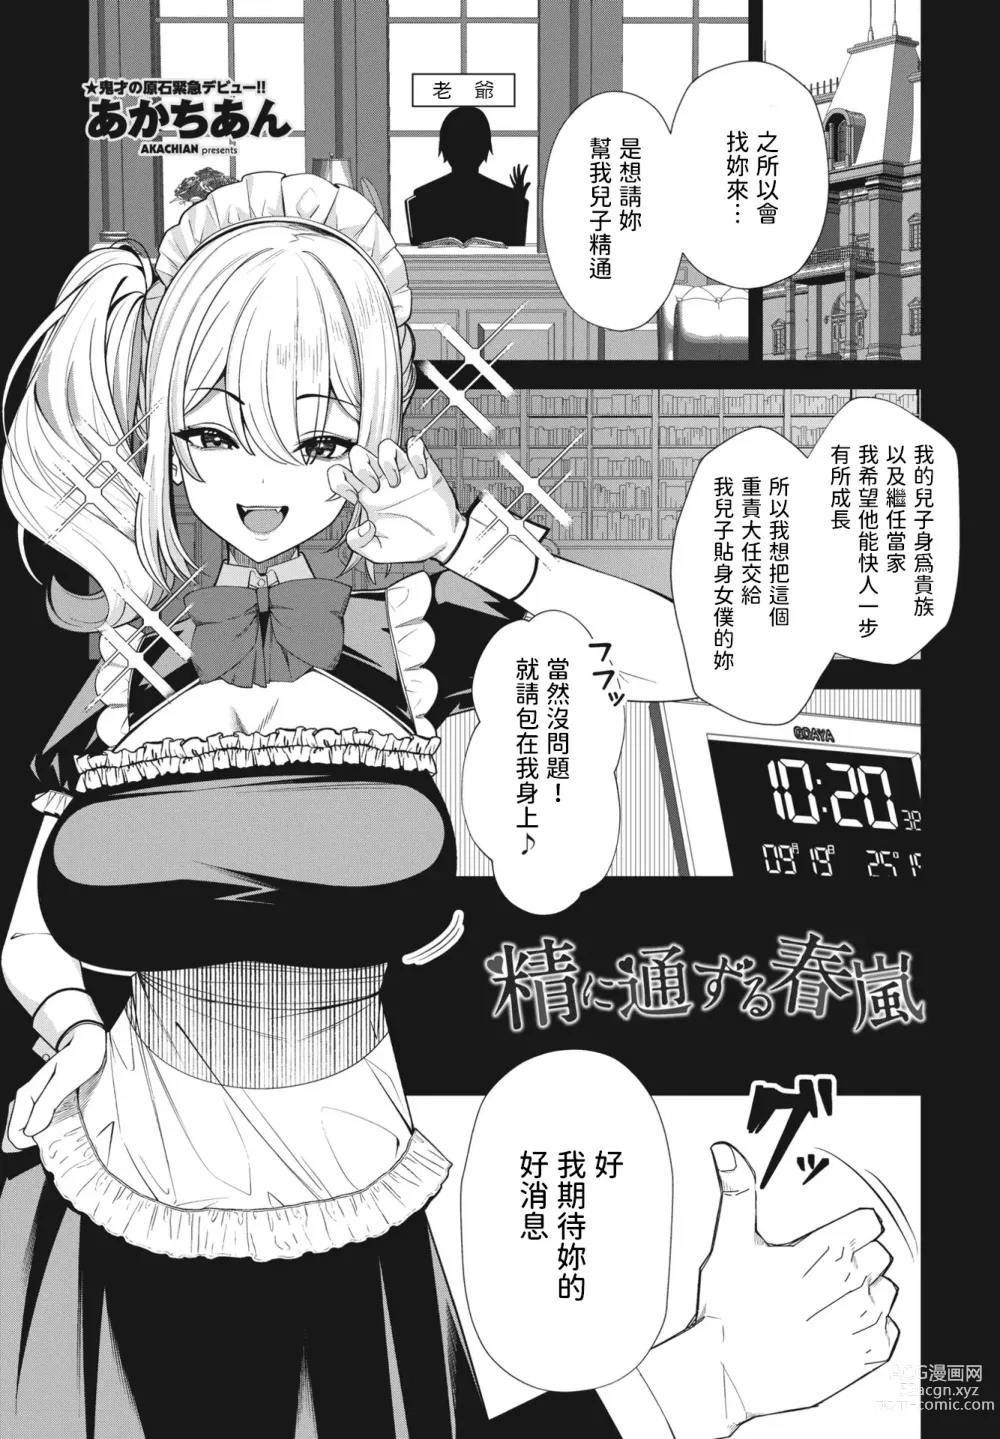 Page 1 of manga Sei ni Tsuuzuru Shunran